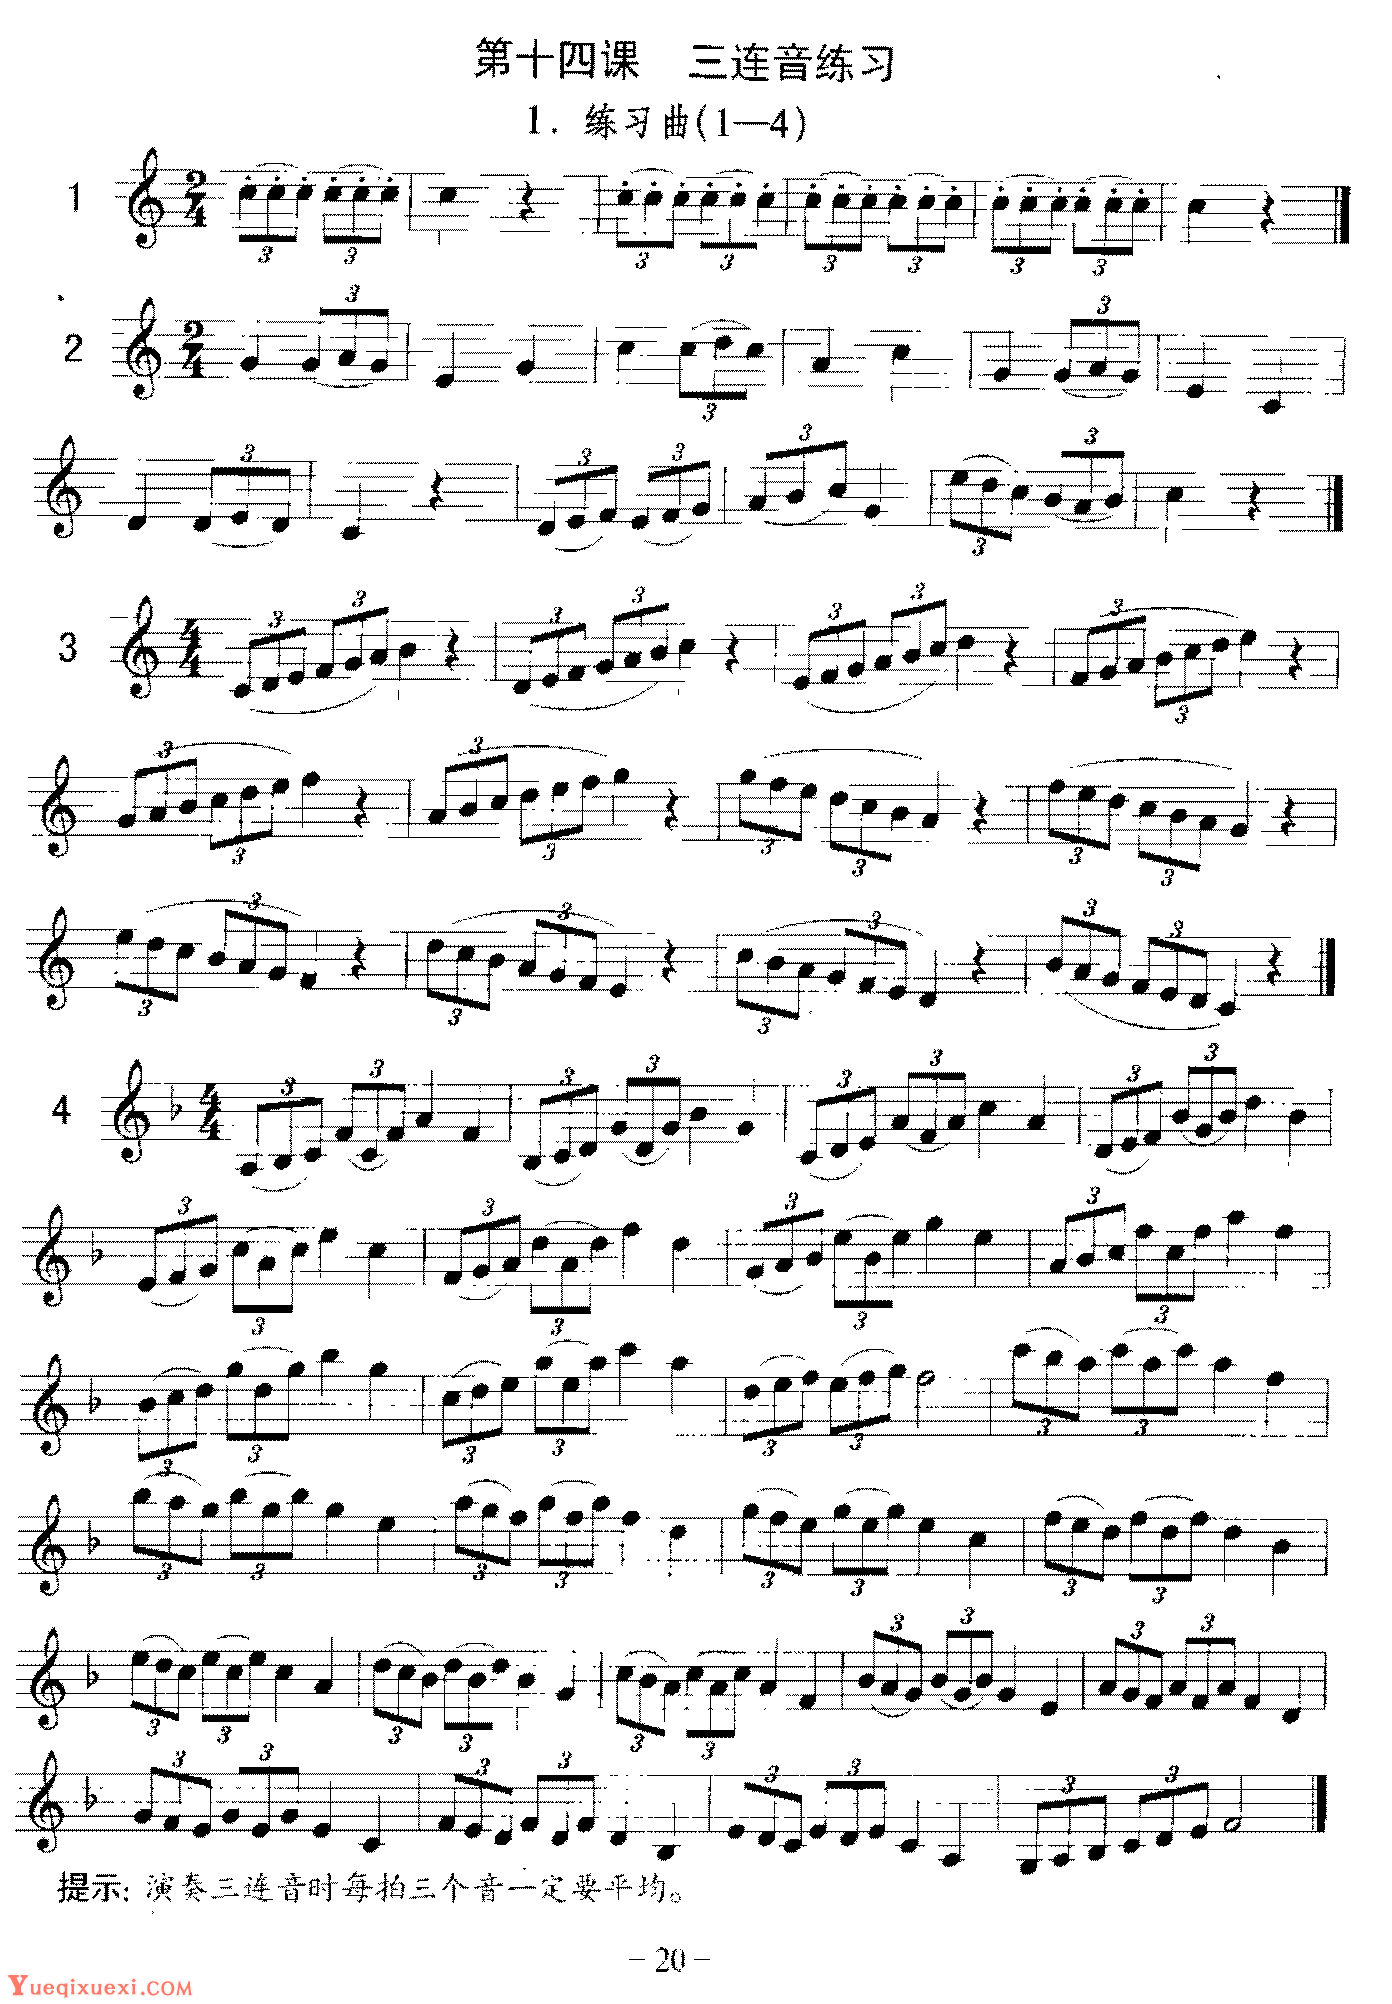 单簧管三连音练习曲《跟从我/兰玲花》